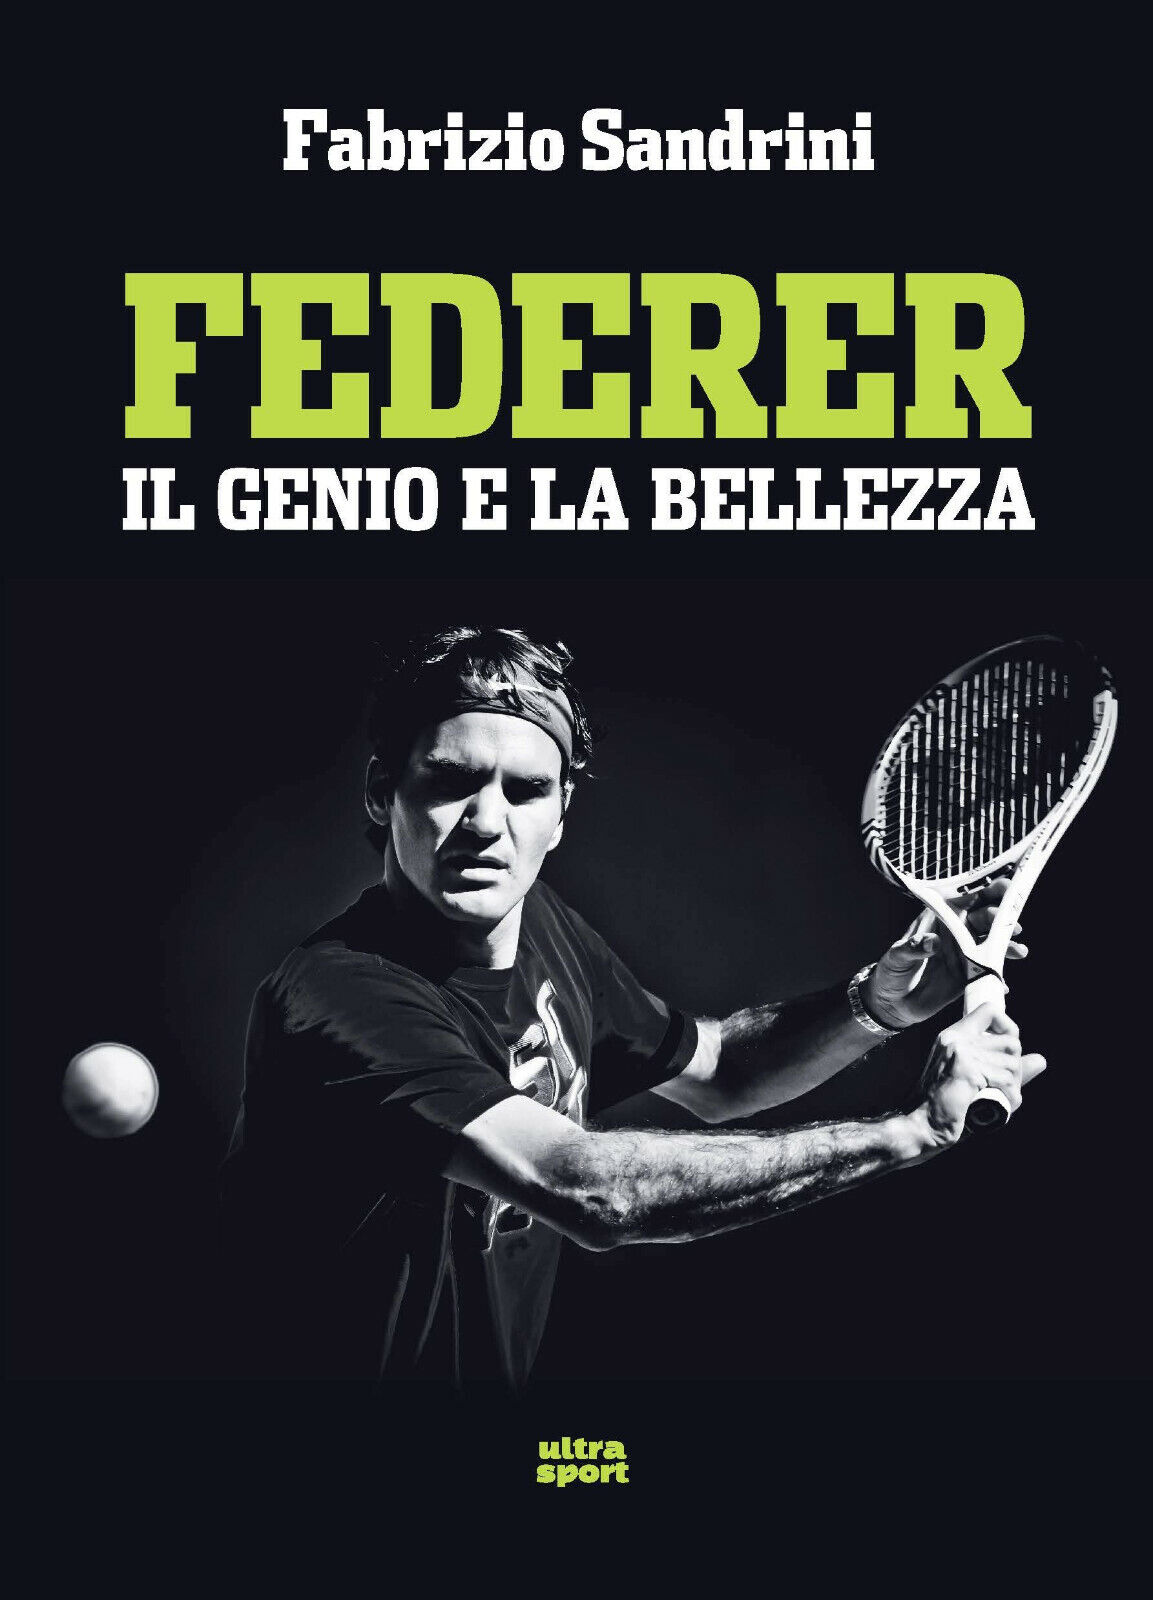 Federer: Il genio e la bellezza - Fabrizio Sandrini - ultra, 2019